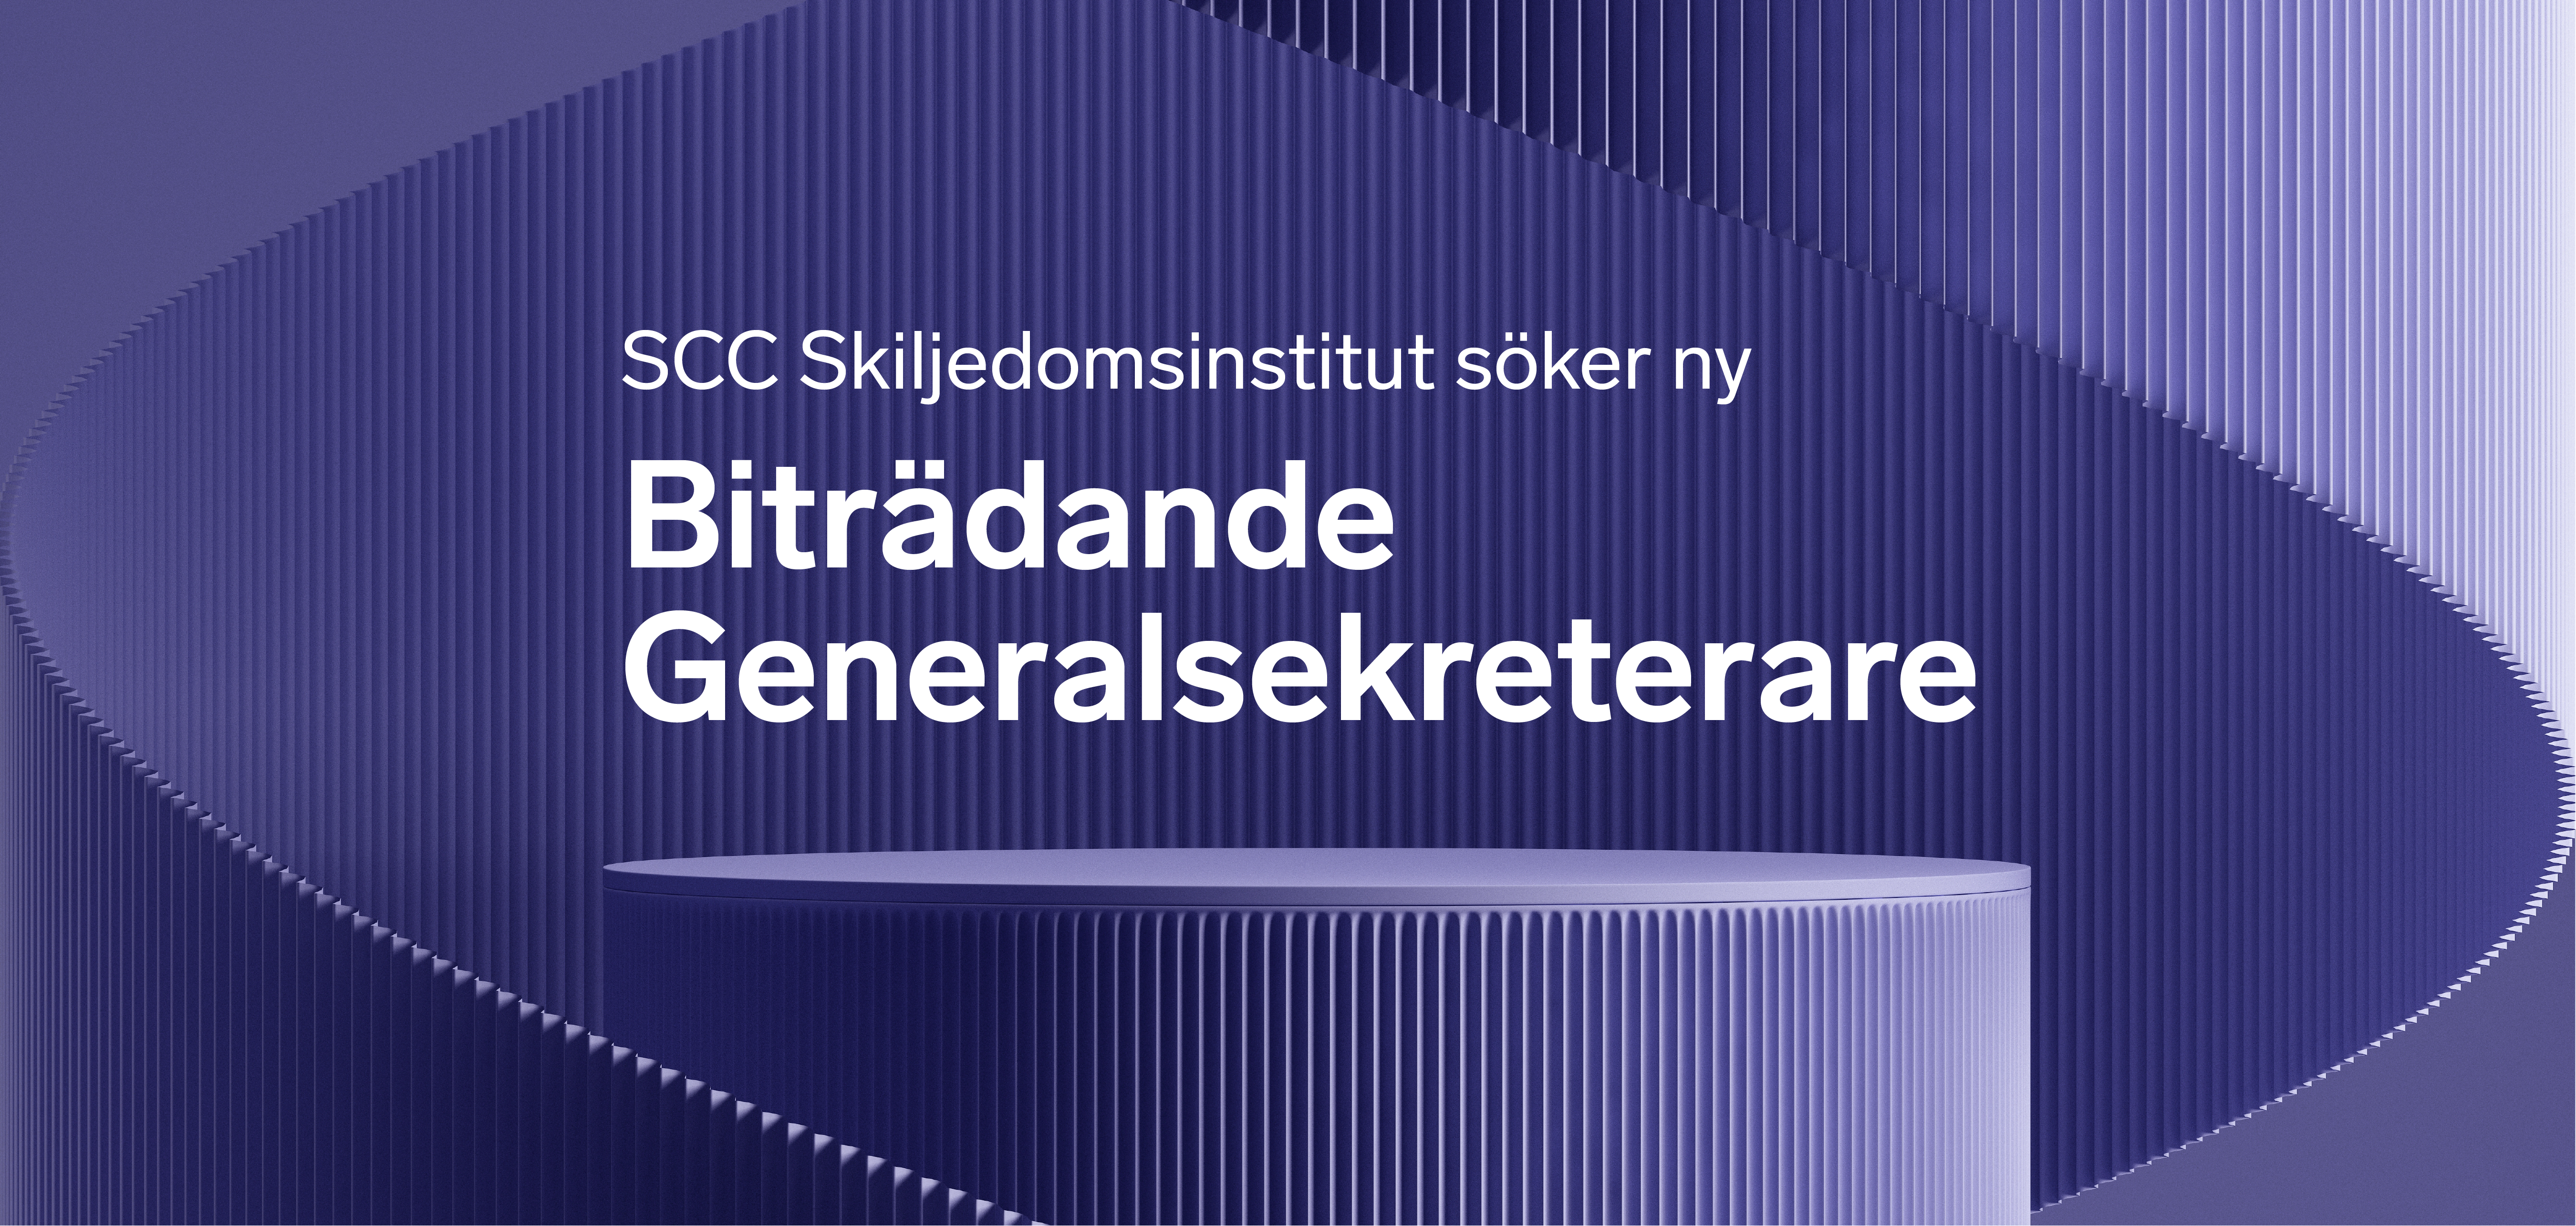 Annonsbild lila med text SCC Skiljedomsinstitut söker ny Biträdande generalsekreterare